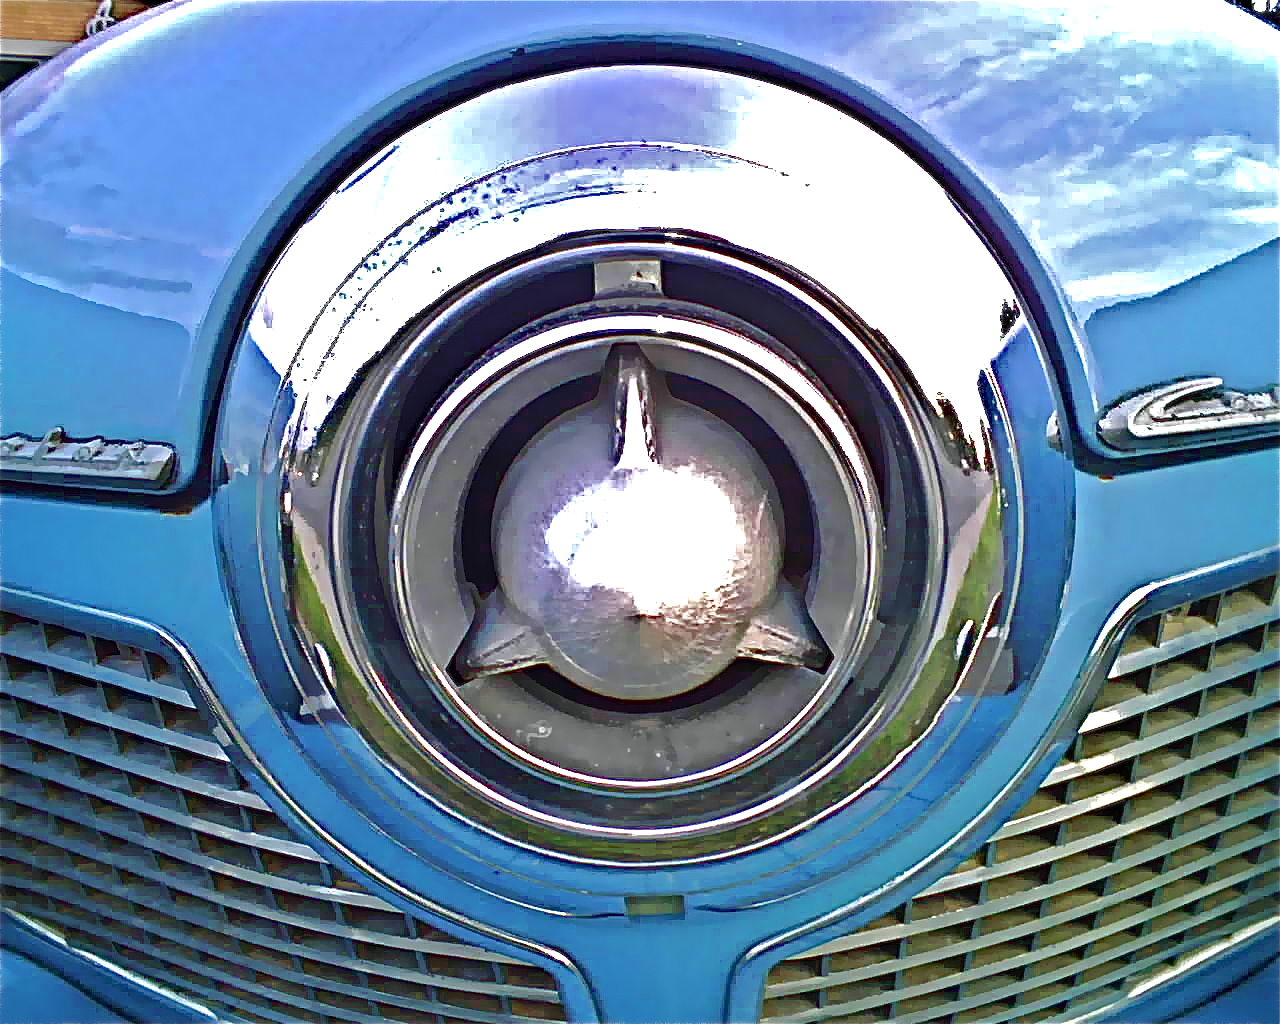 1951 Studebaker Commander V8 nose closeup